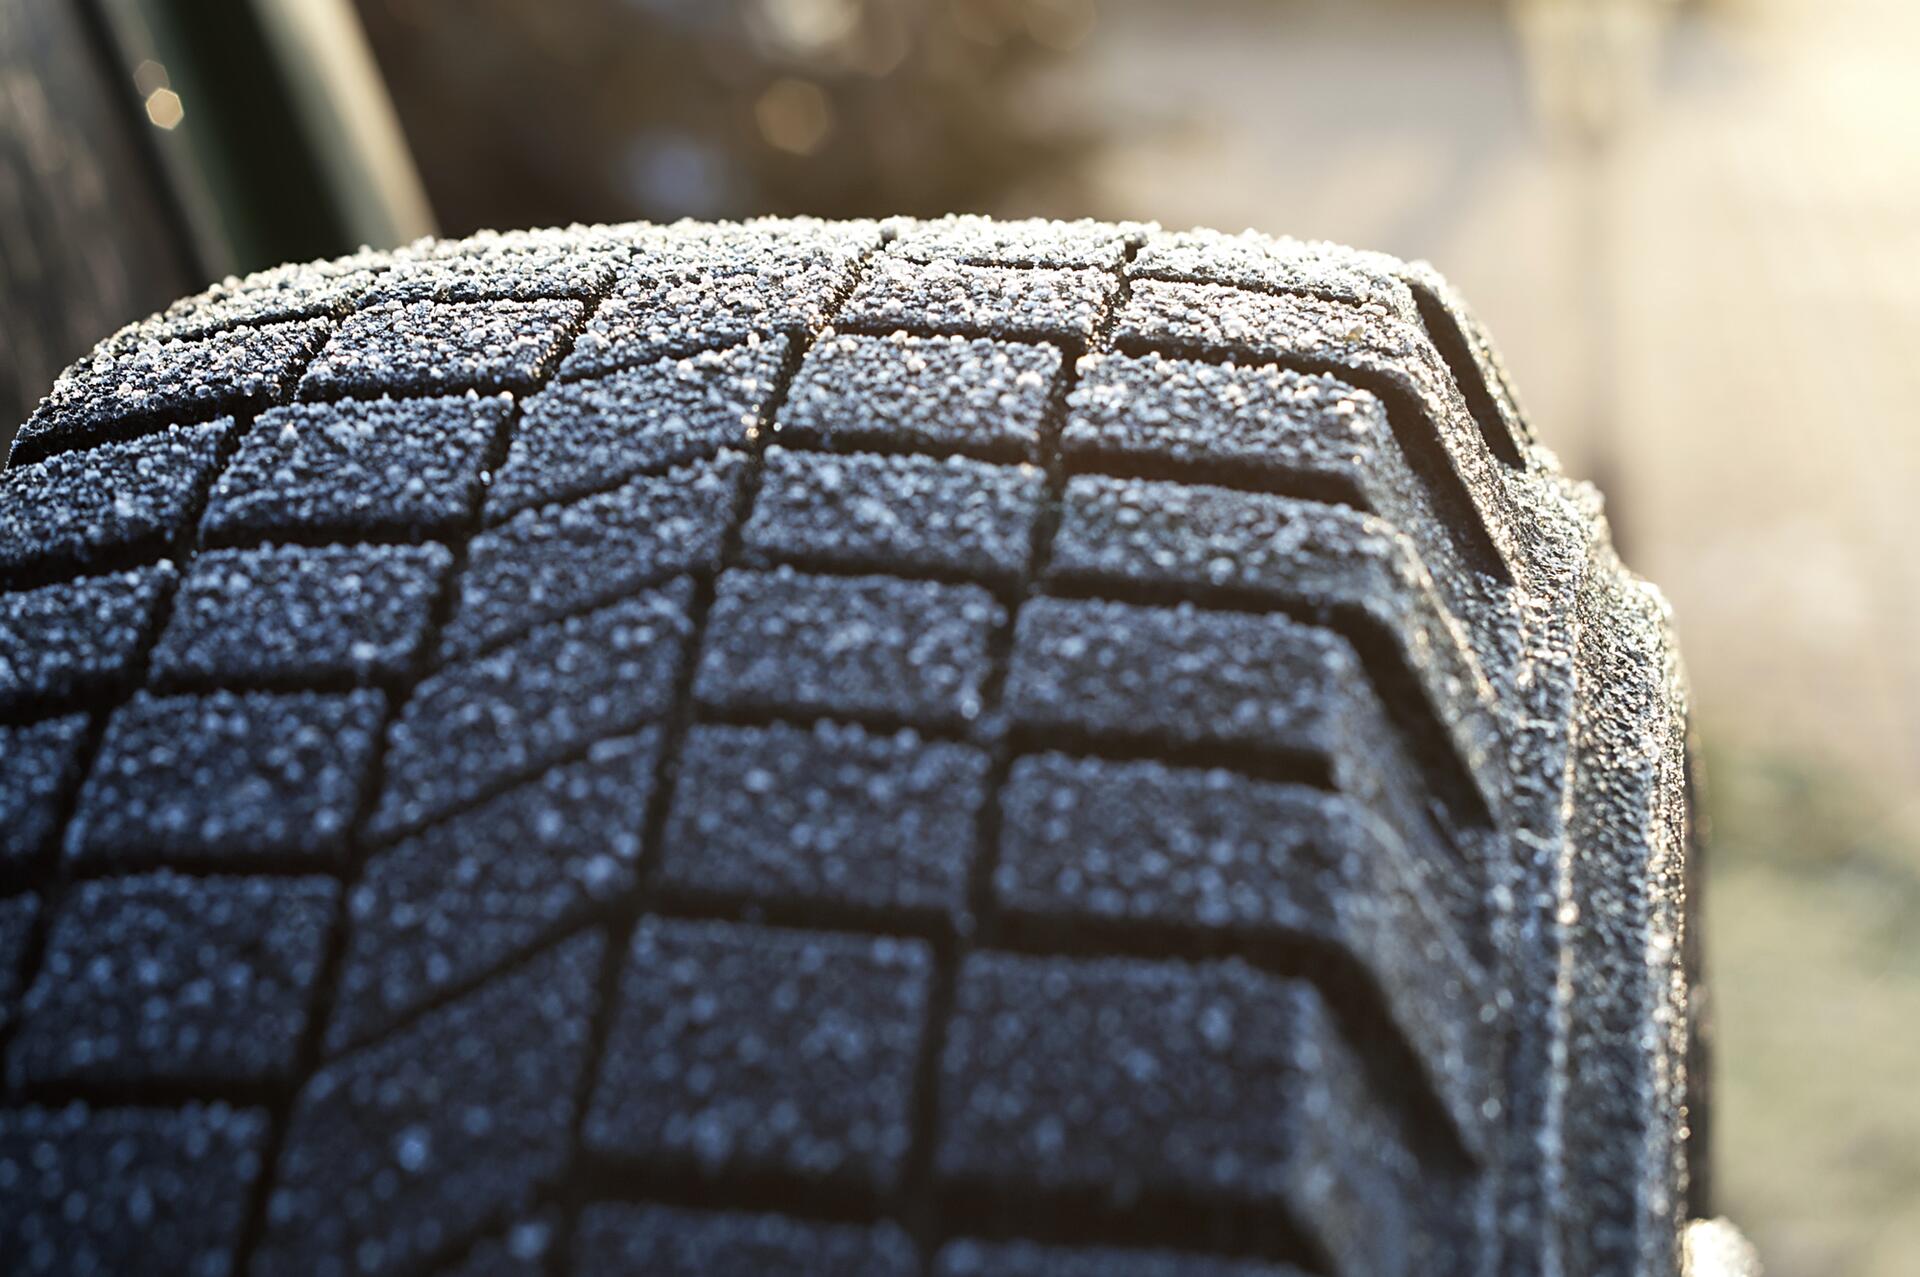 Jak zjistit, kolik milimetrů má vzorek vašich pneumatik